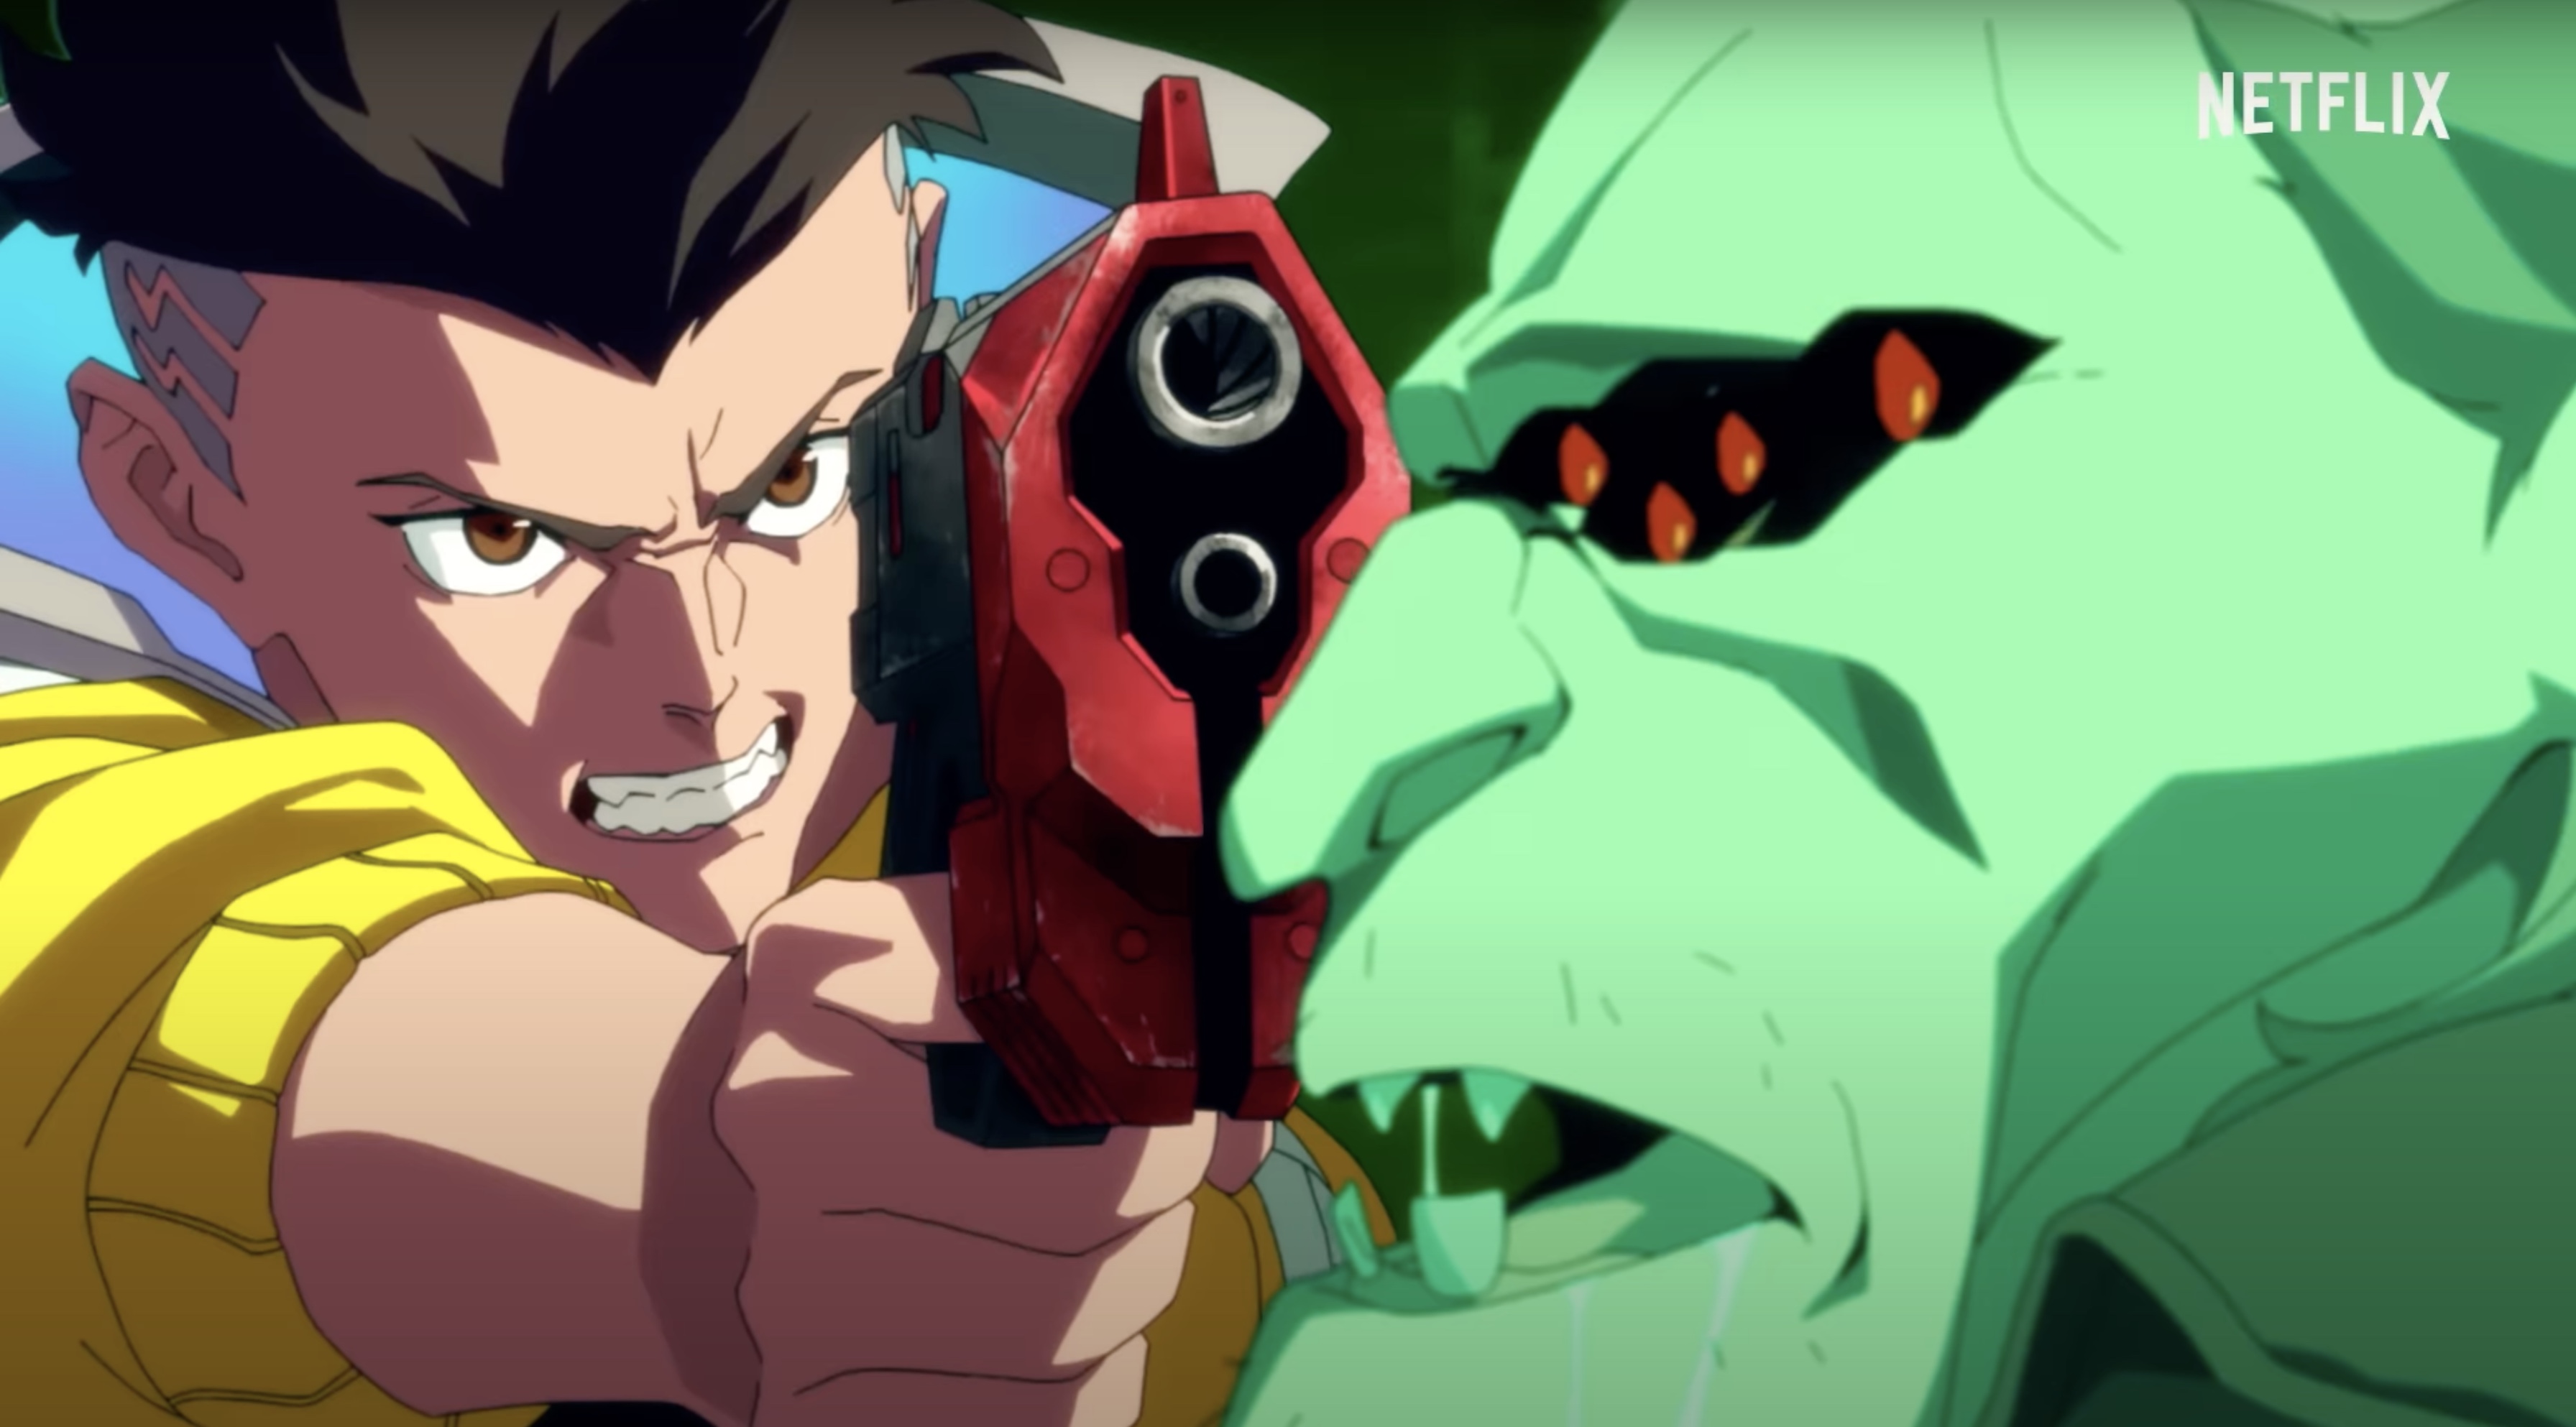 Netflix Anime Cyberpunk Edgerunners Gets First Teaser Trailer